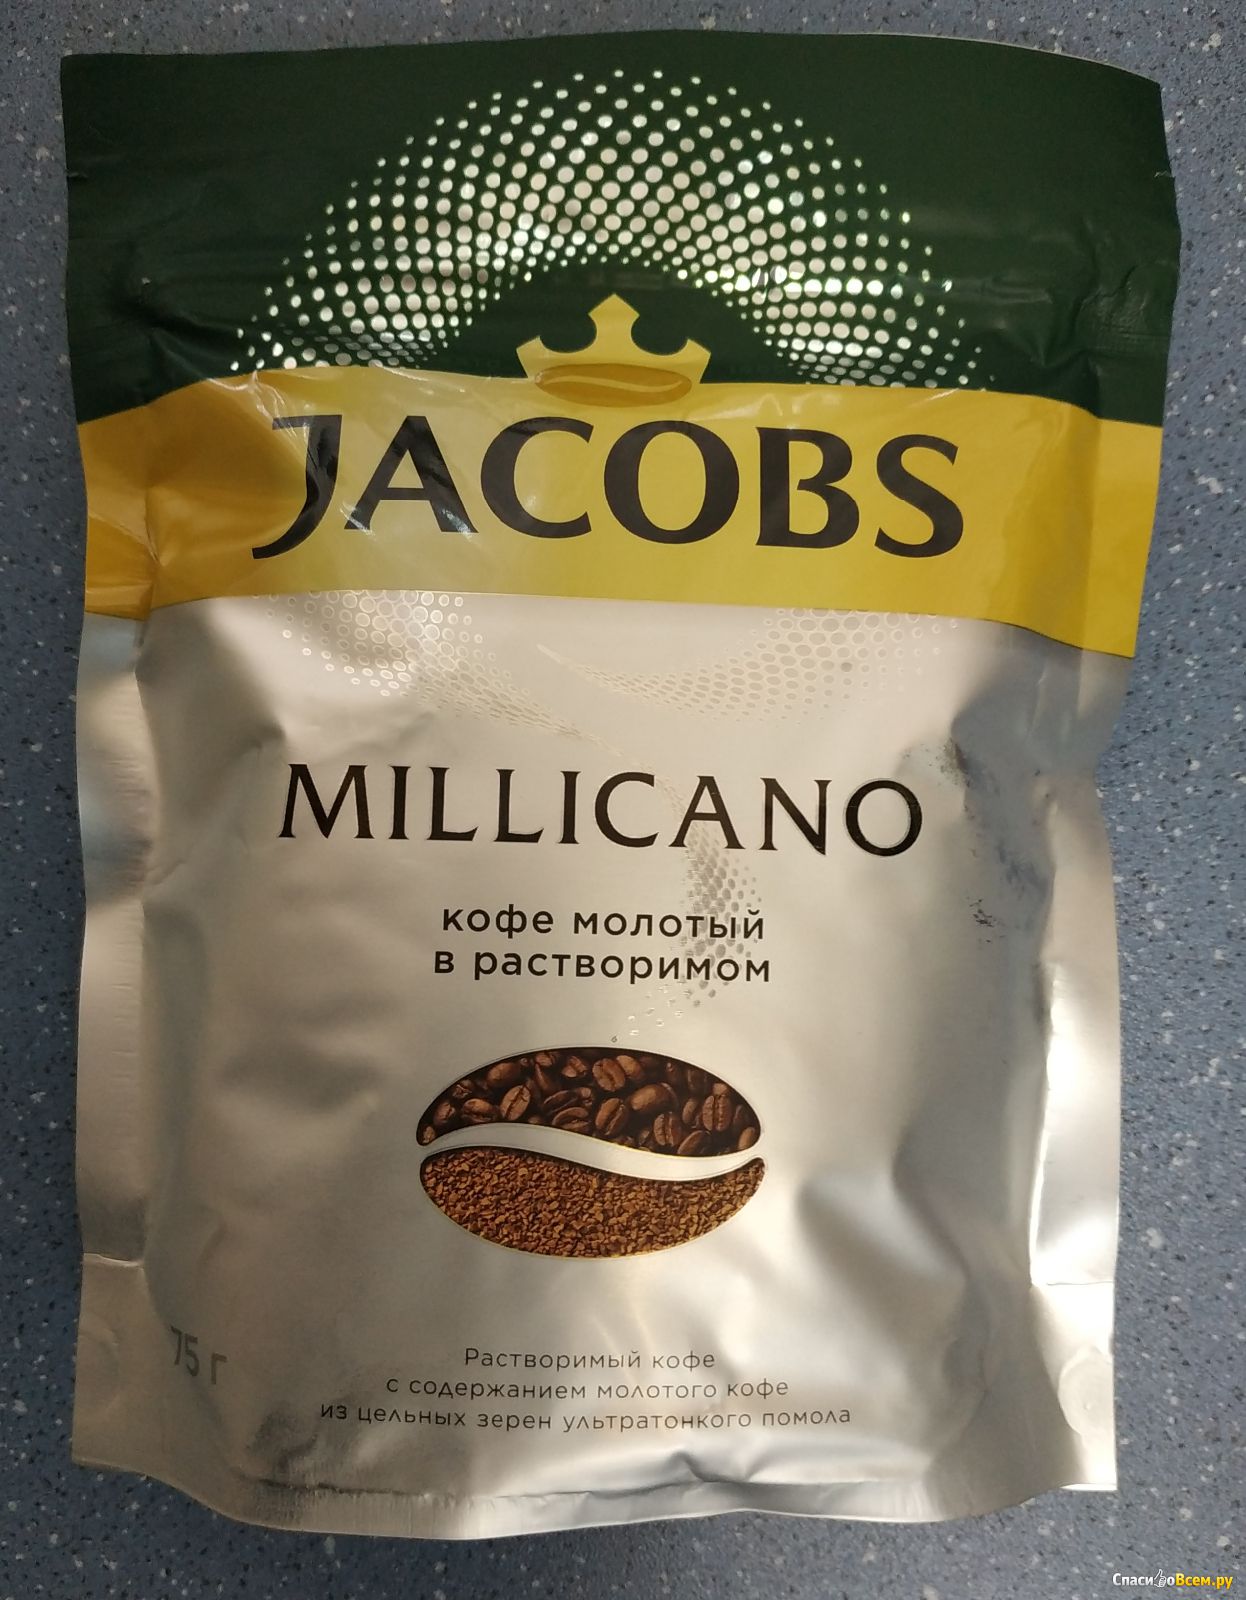 Кофе растворимый миликано. Jacobs Monarch Millicano. Якобс Милликано молотый. Кофе "Якобс Монарх" Миликано. Кофе растворимый Якобс мелькана.